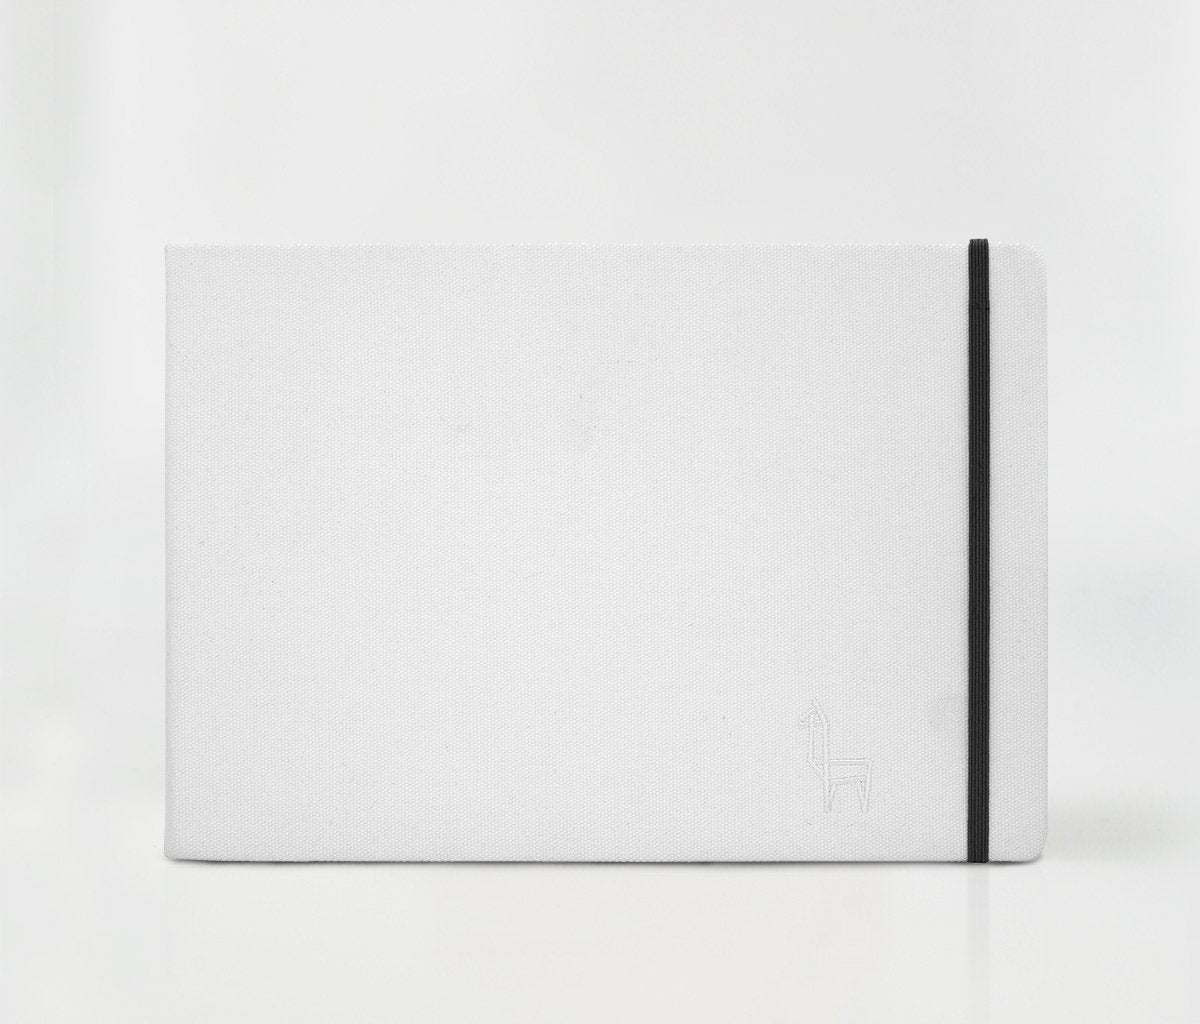 Etchr Mixed Media Hardbound Sketchbook - A4, 8.3 x 11.7, Hot Press,  Landscape